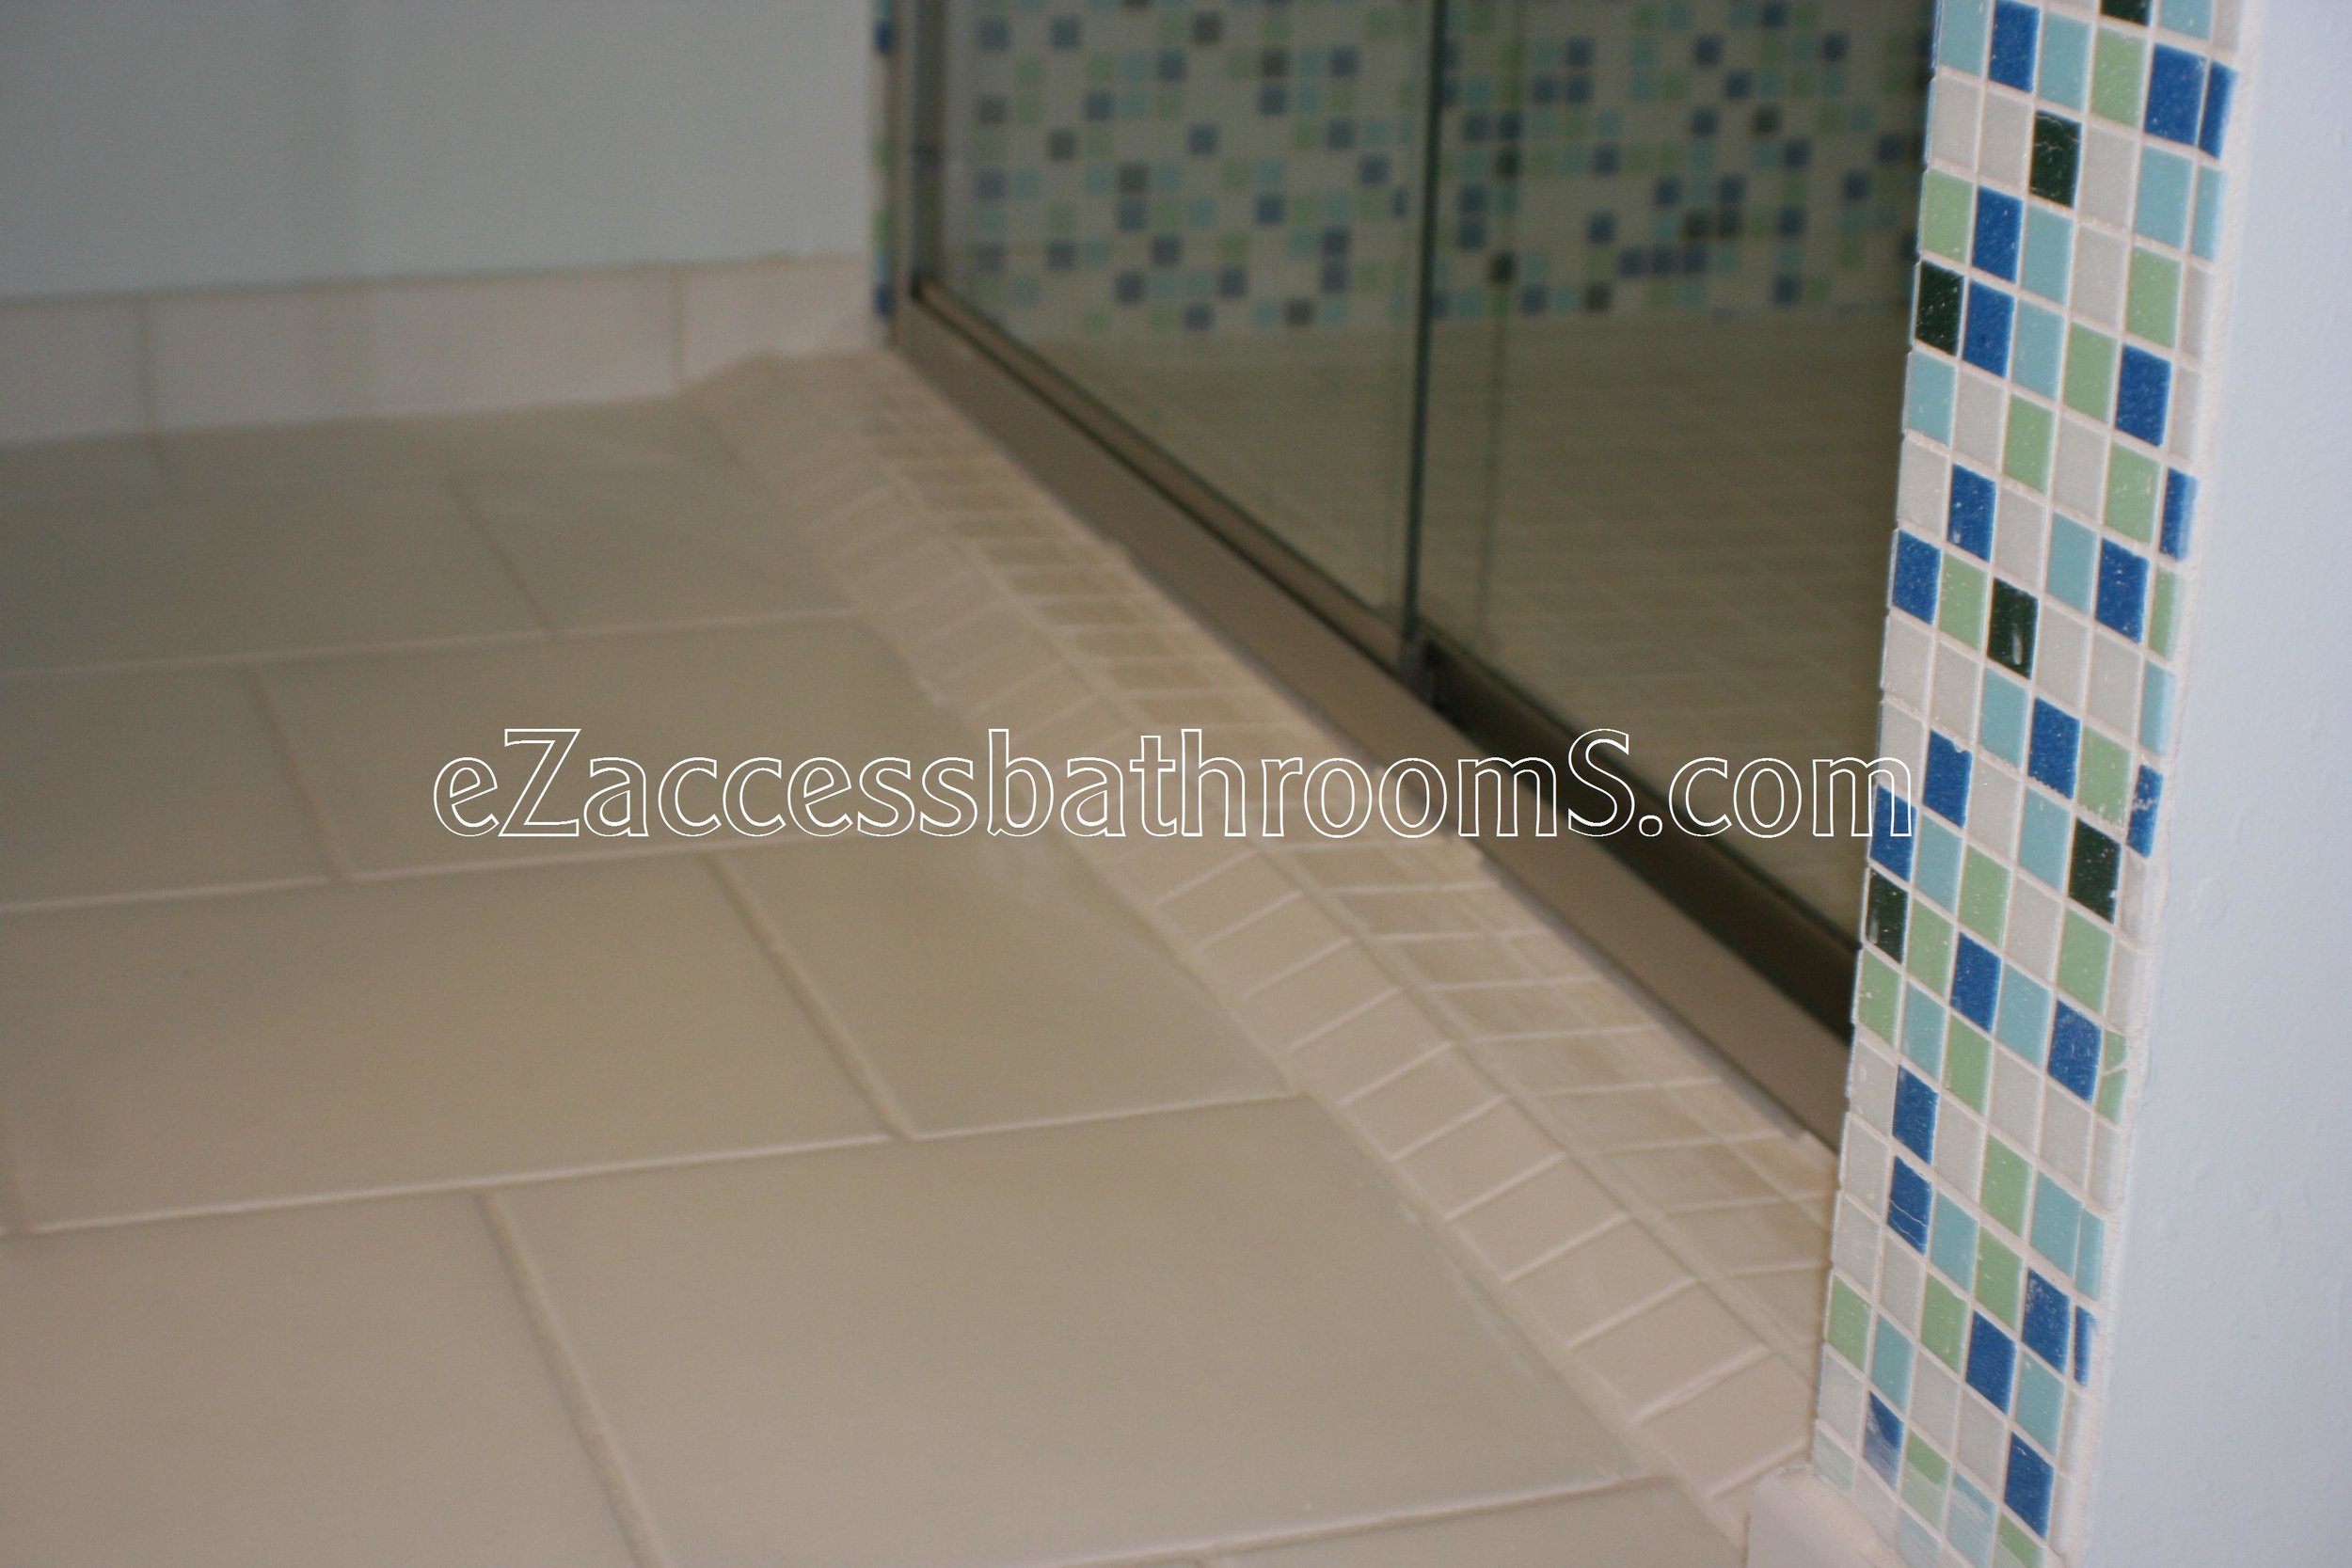 rollin shower ezaccessbathrooms.com 0041.JPG